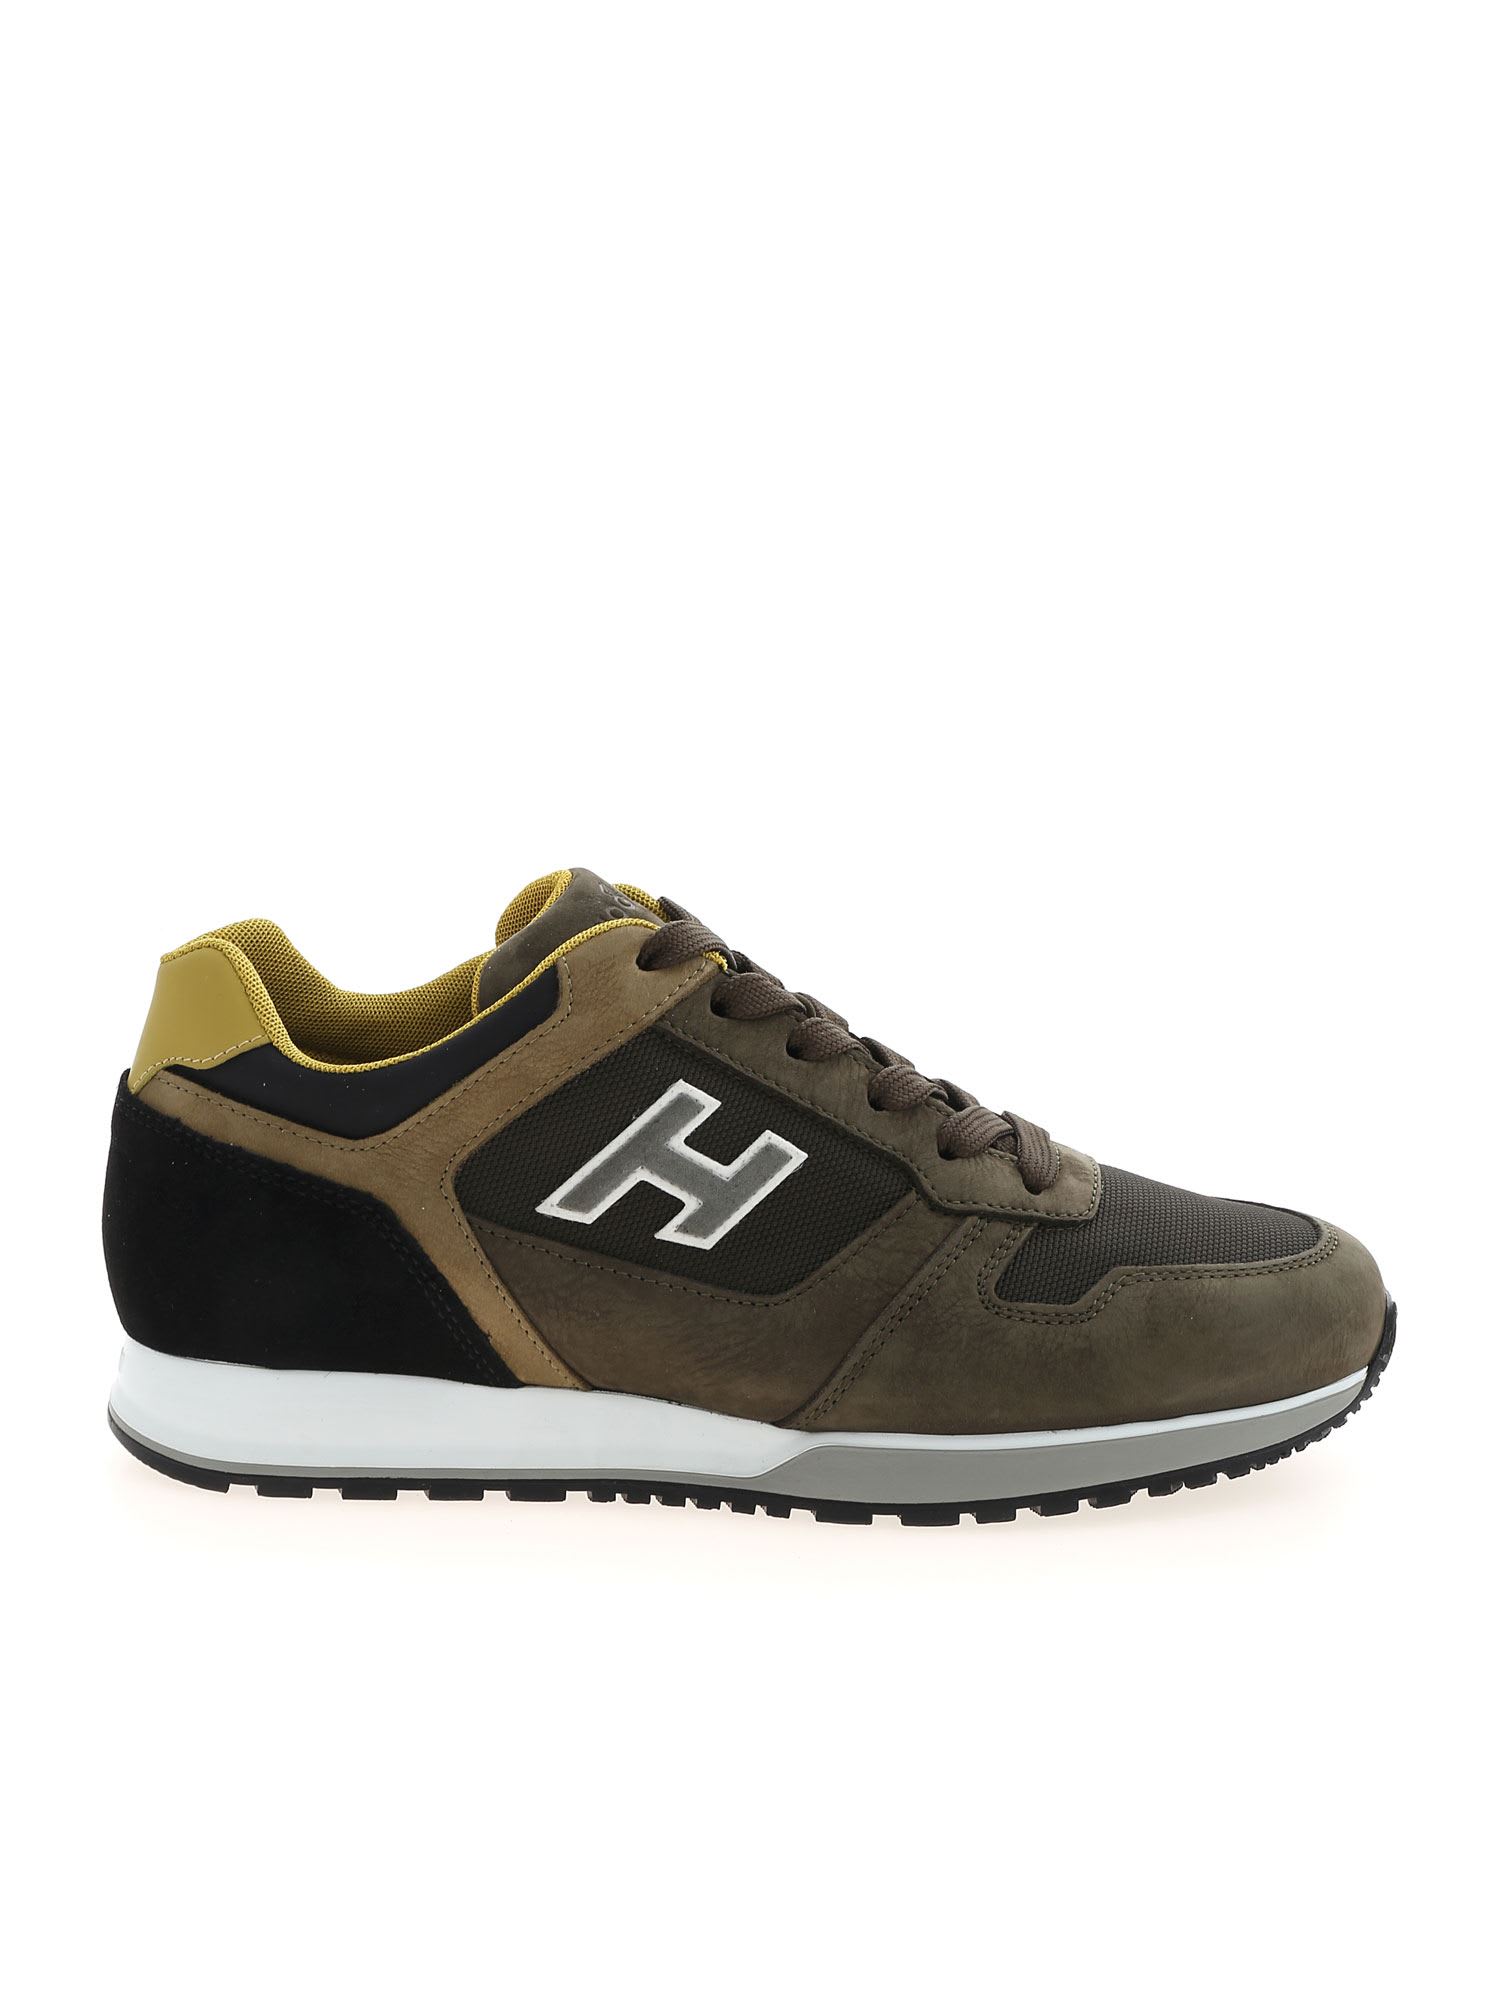 Hogan H321 Flock Sneakers In Green